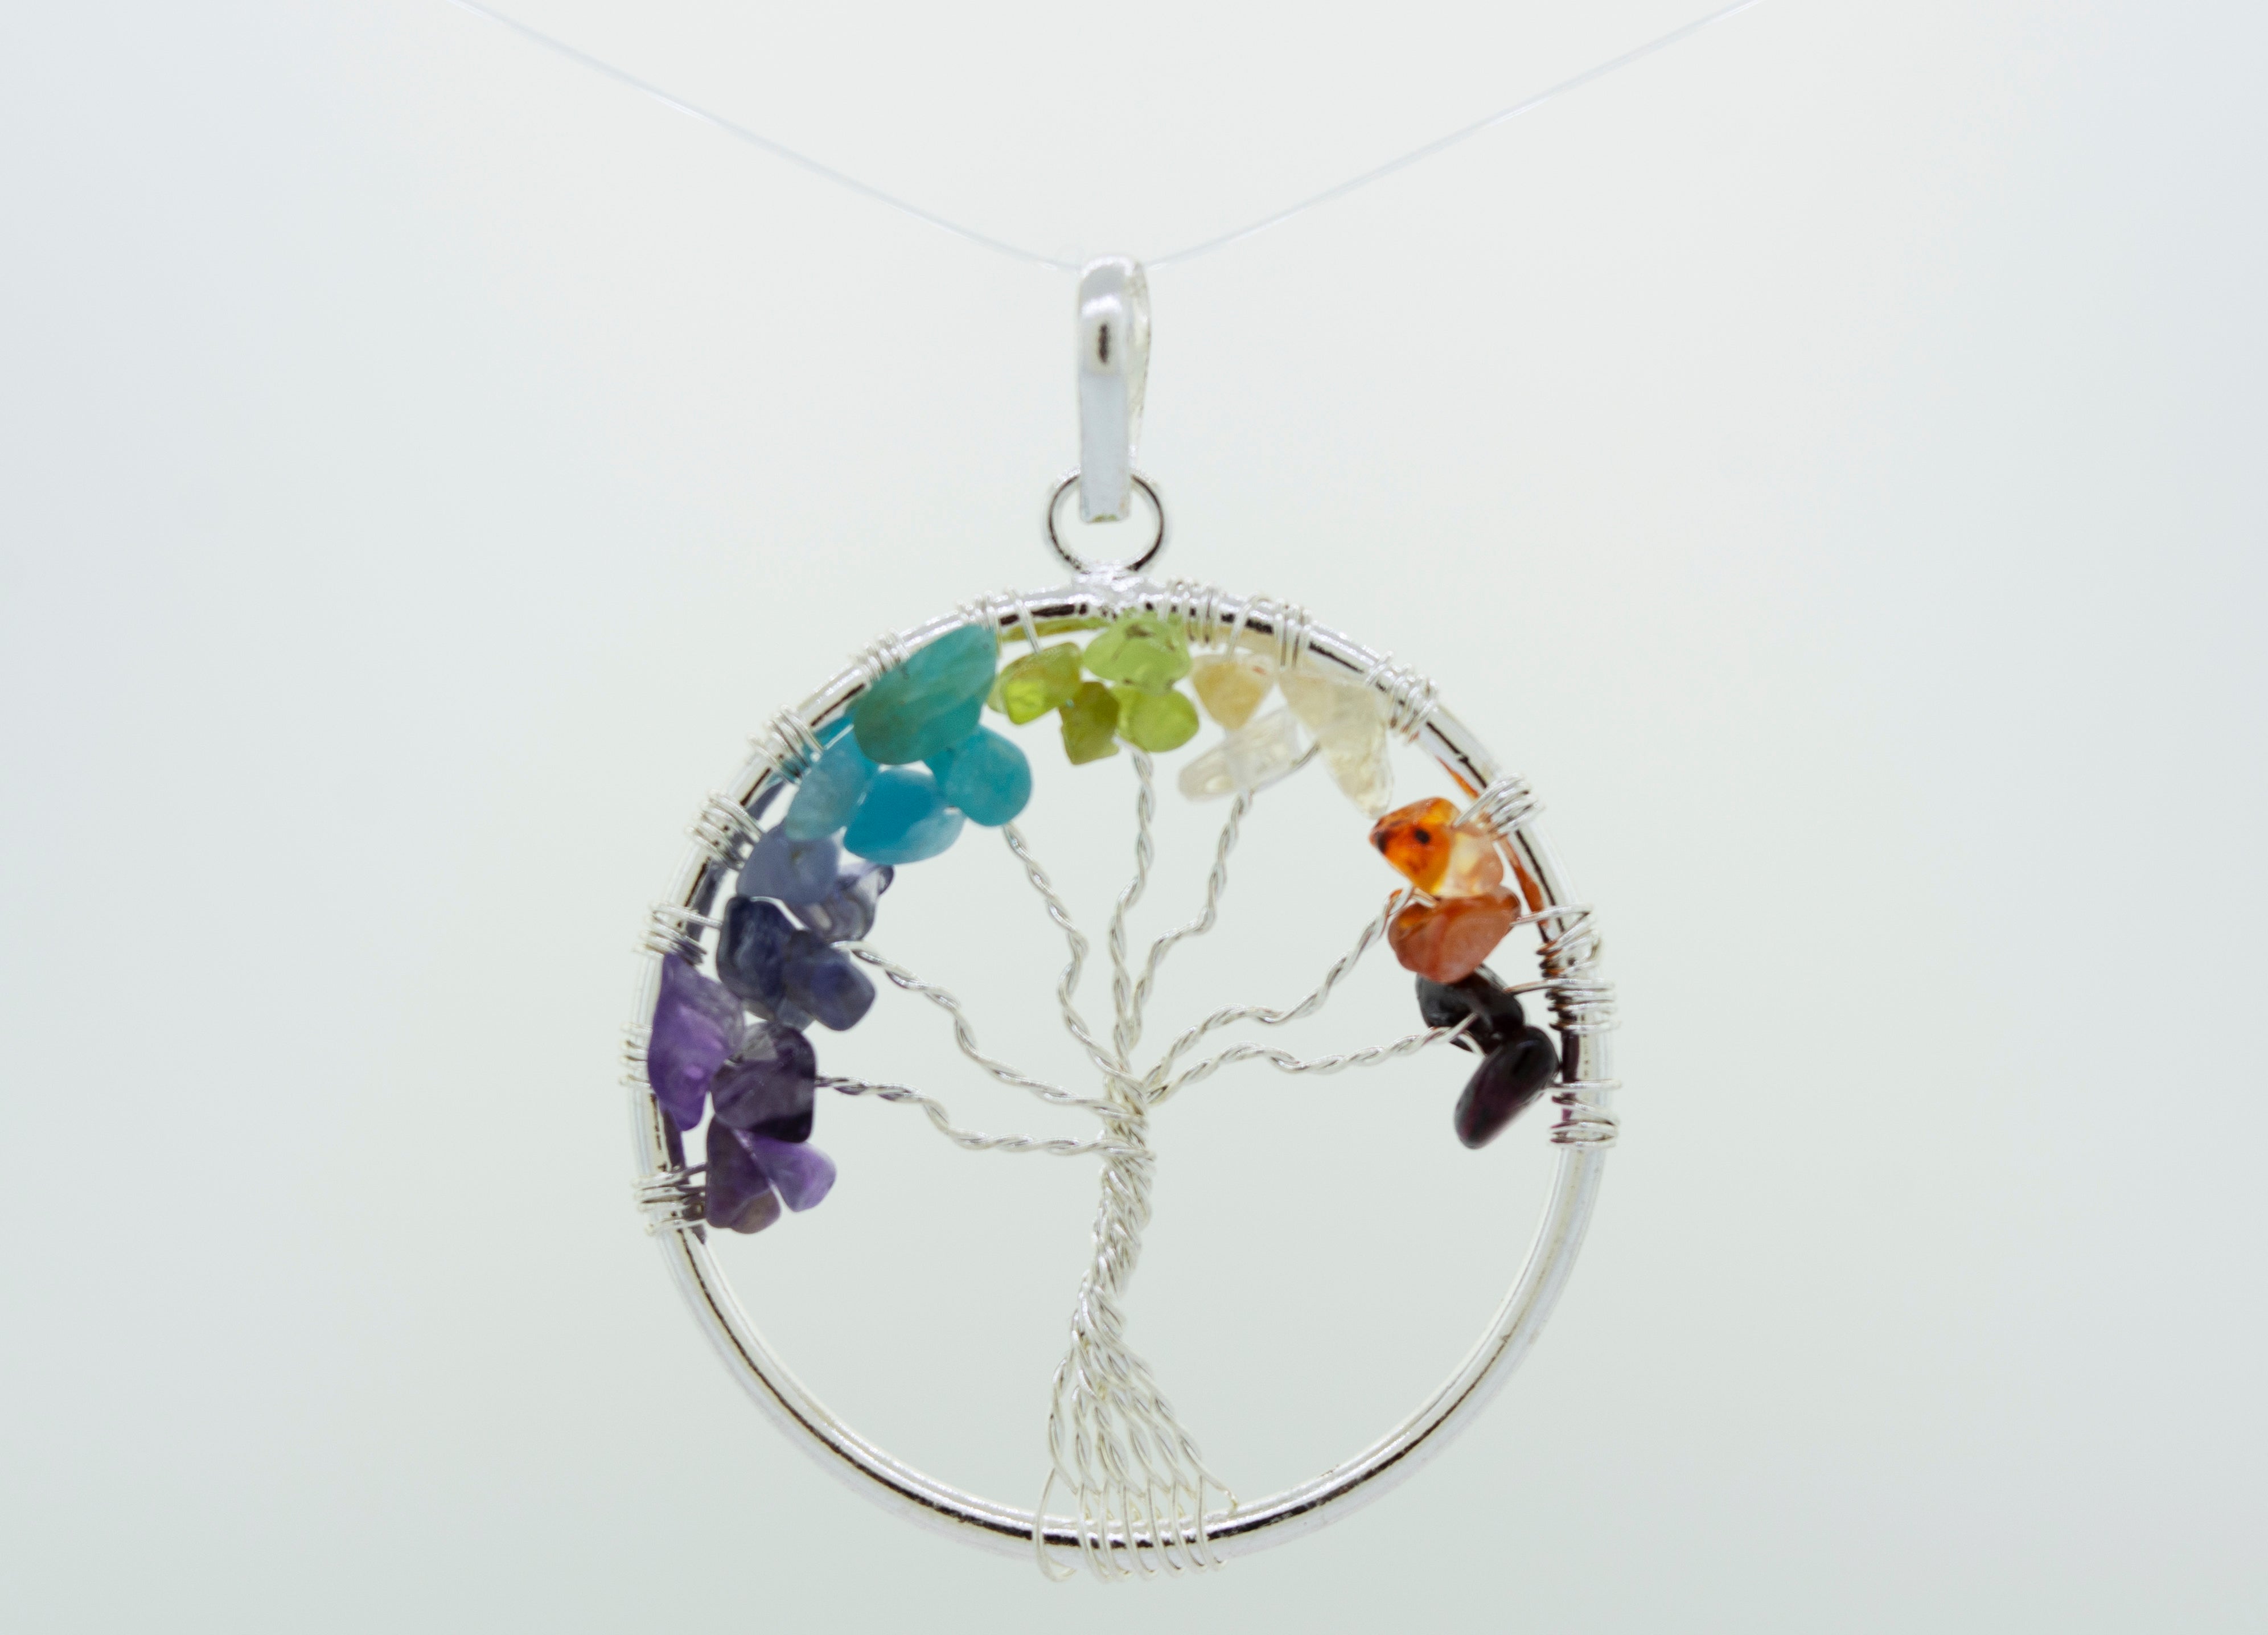 7 Chakra Tree Of Life Necklace - Handmade Jewelry - Magic Crystals